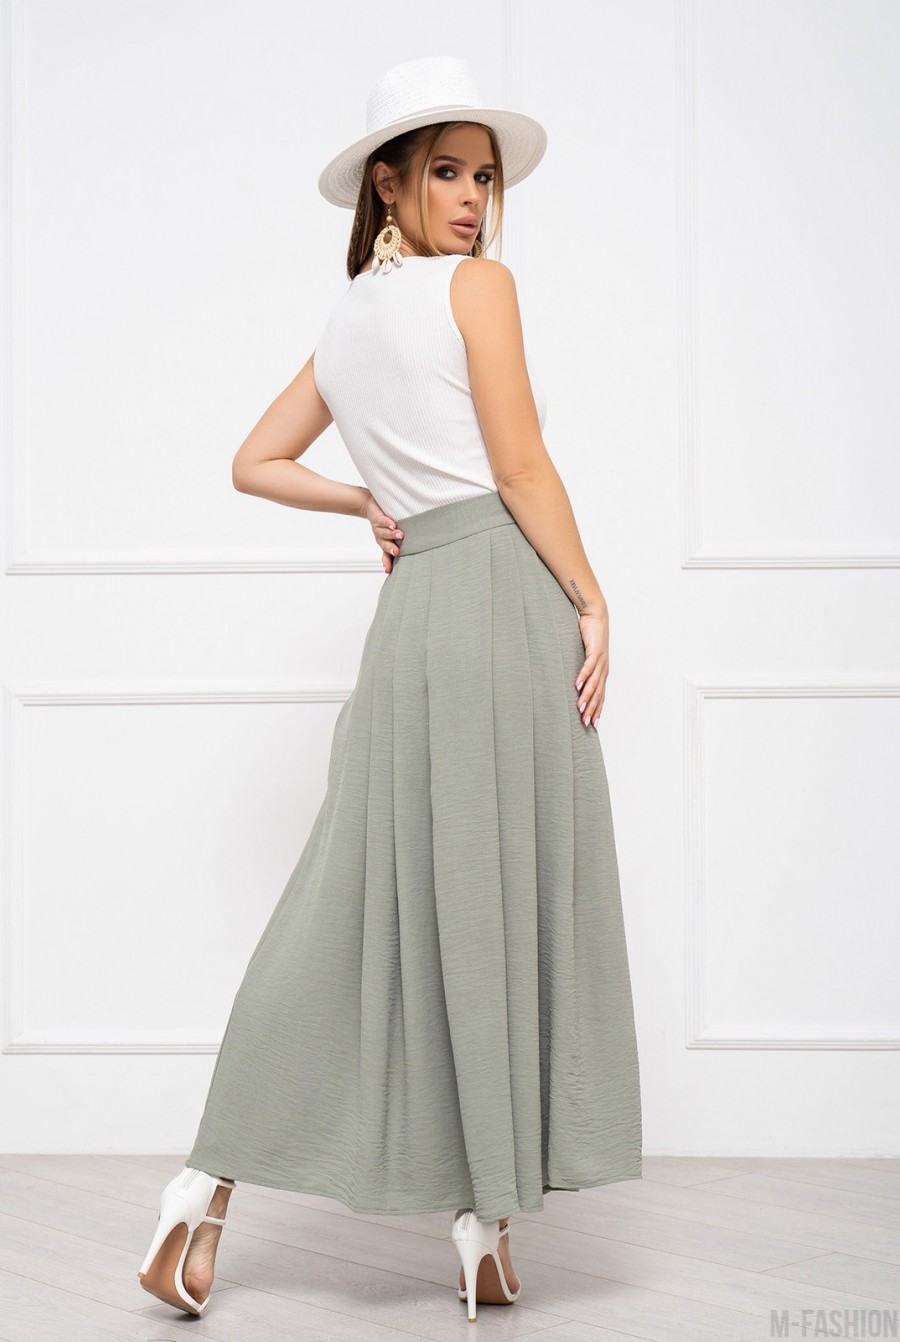 Оливковая текстурированная юбка со сборками - Фото 3